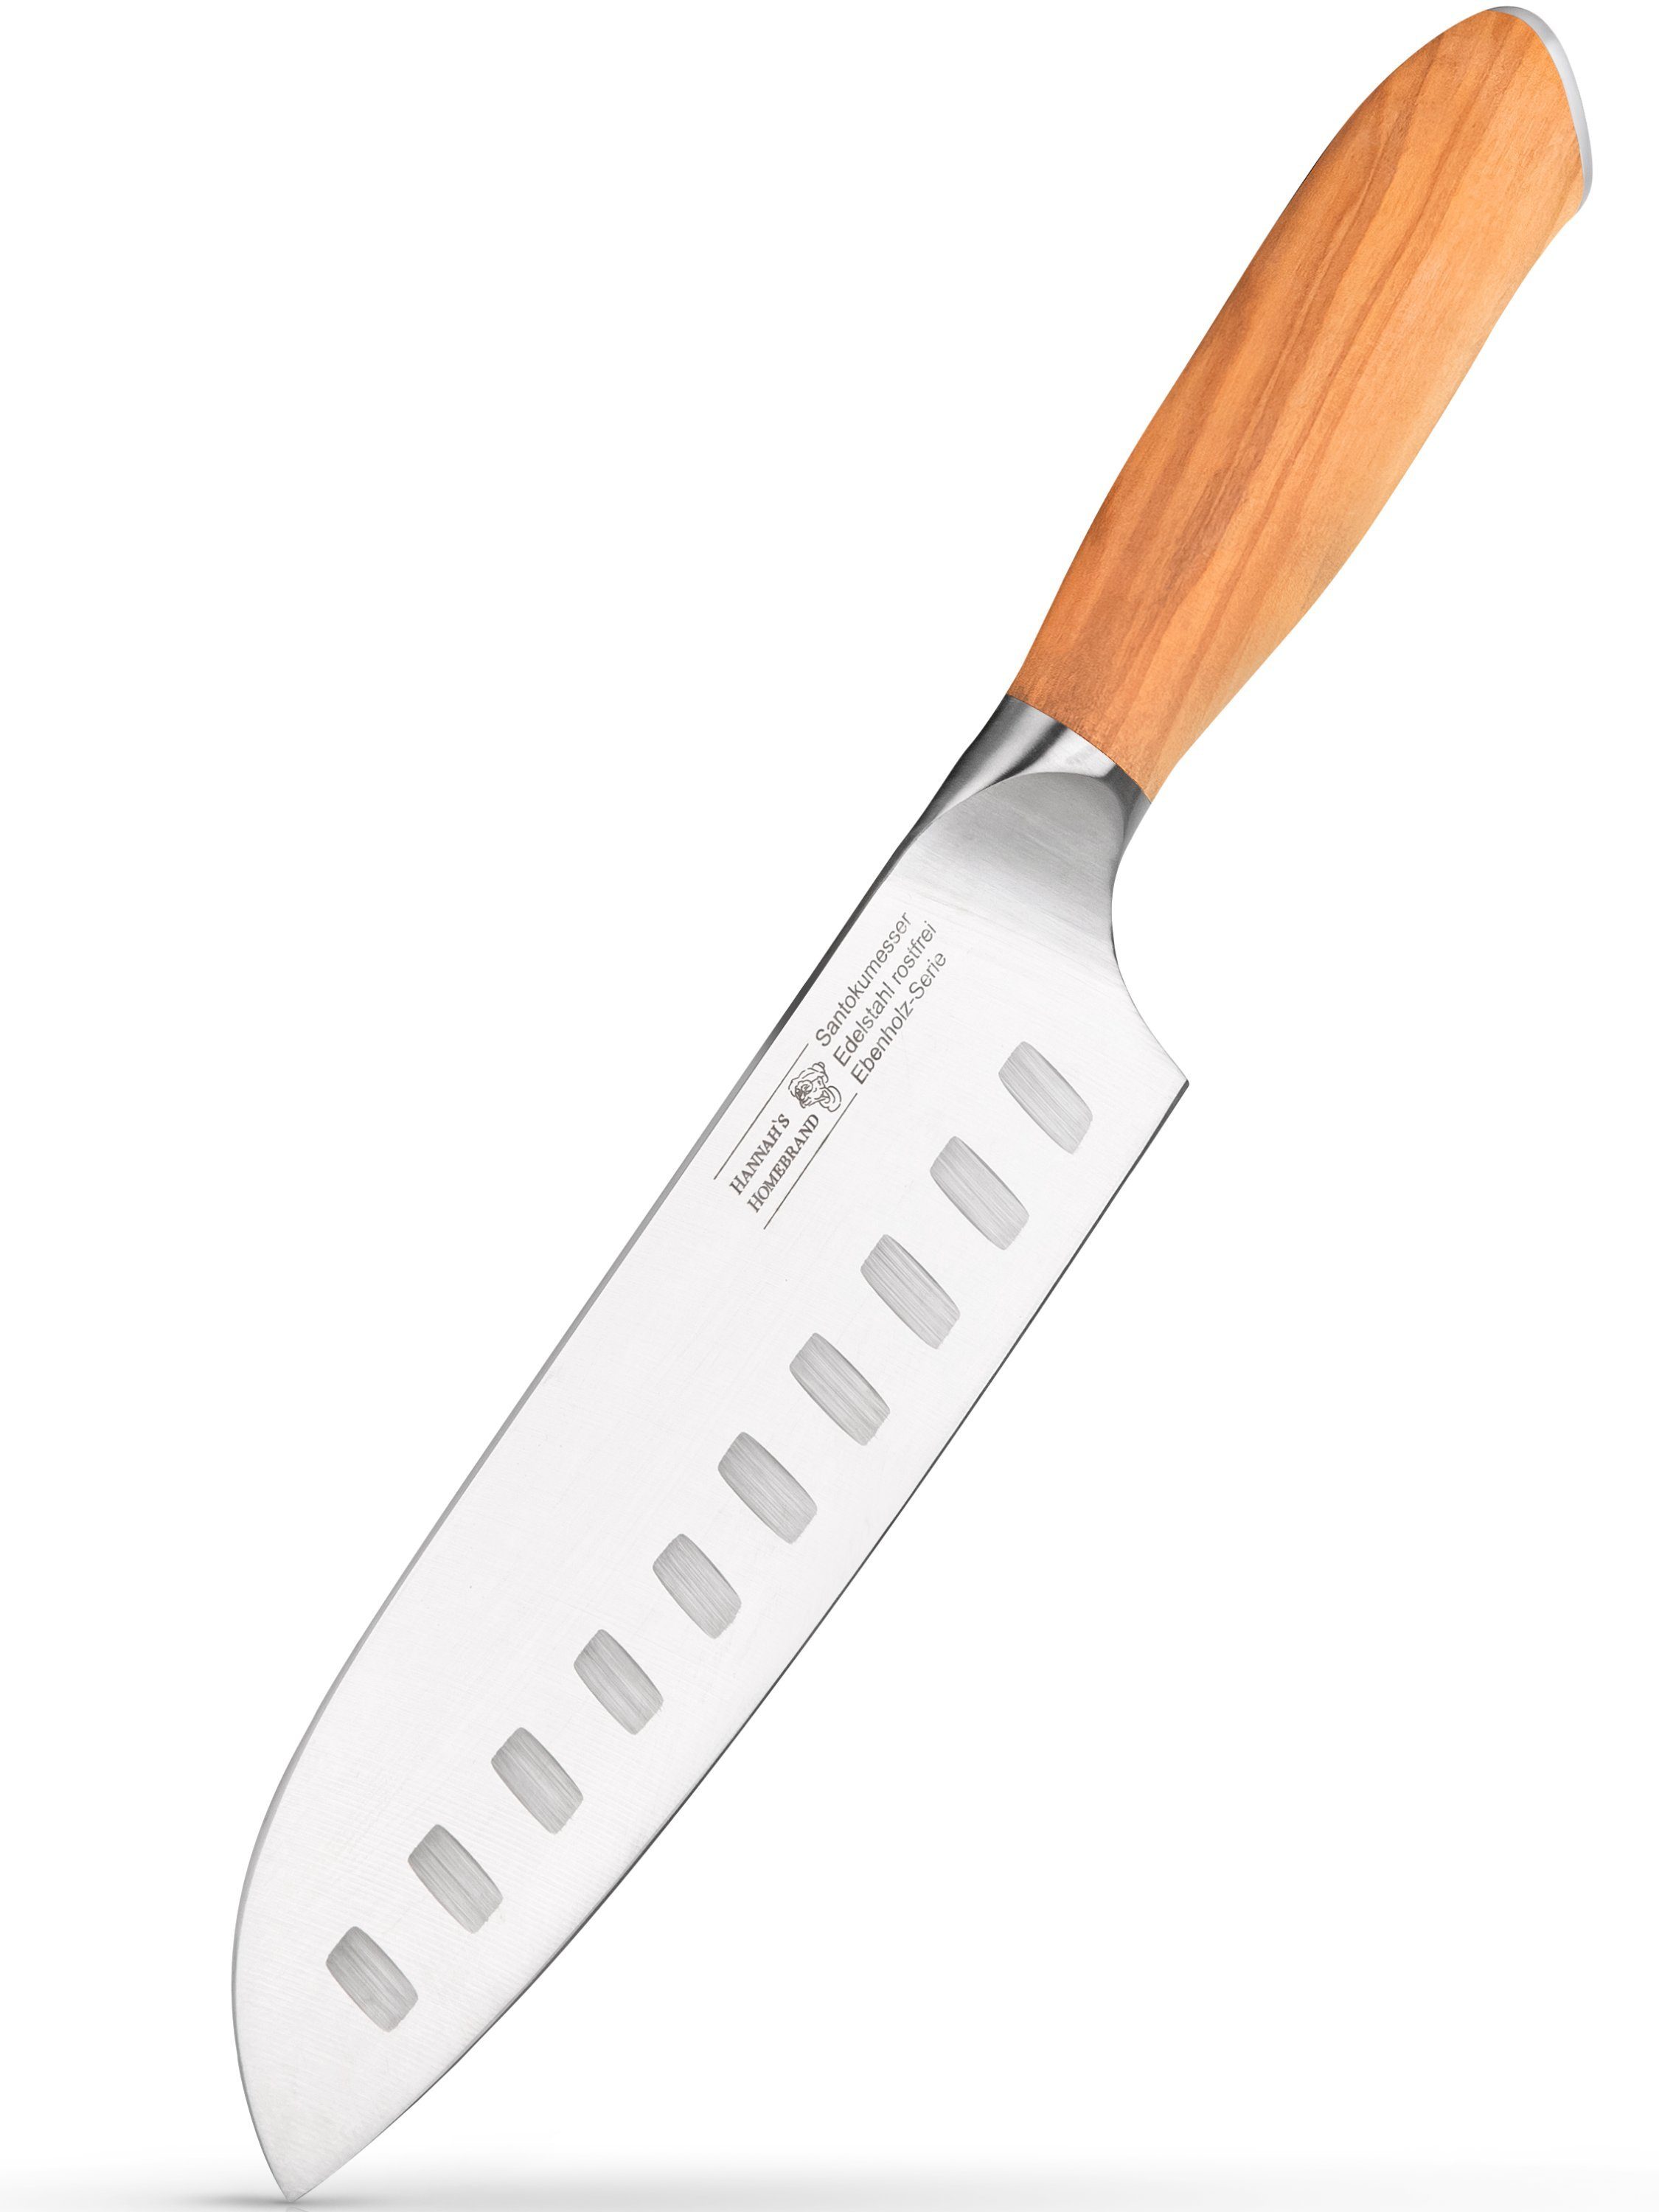 Hannah's Homebrand Santokumesser rostfreies Santokumesser & Sushi Messer aus Olivenholz, verblüffend scharf, rostfrei und langlebig (18 cm Klinge)